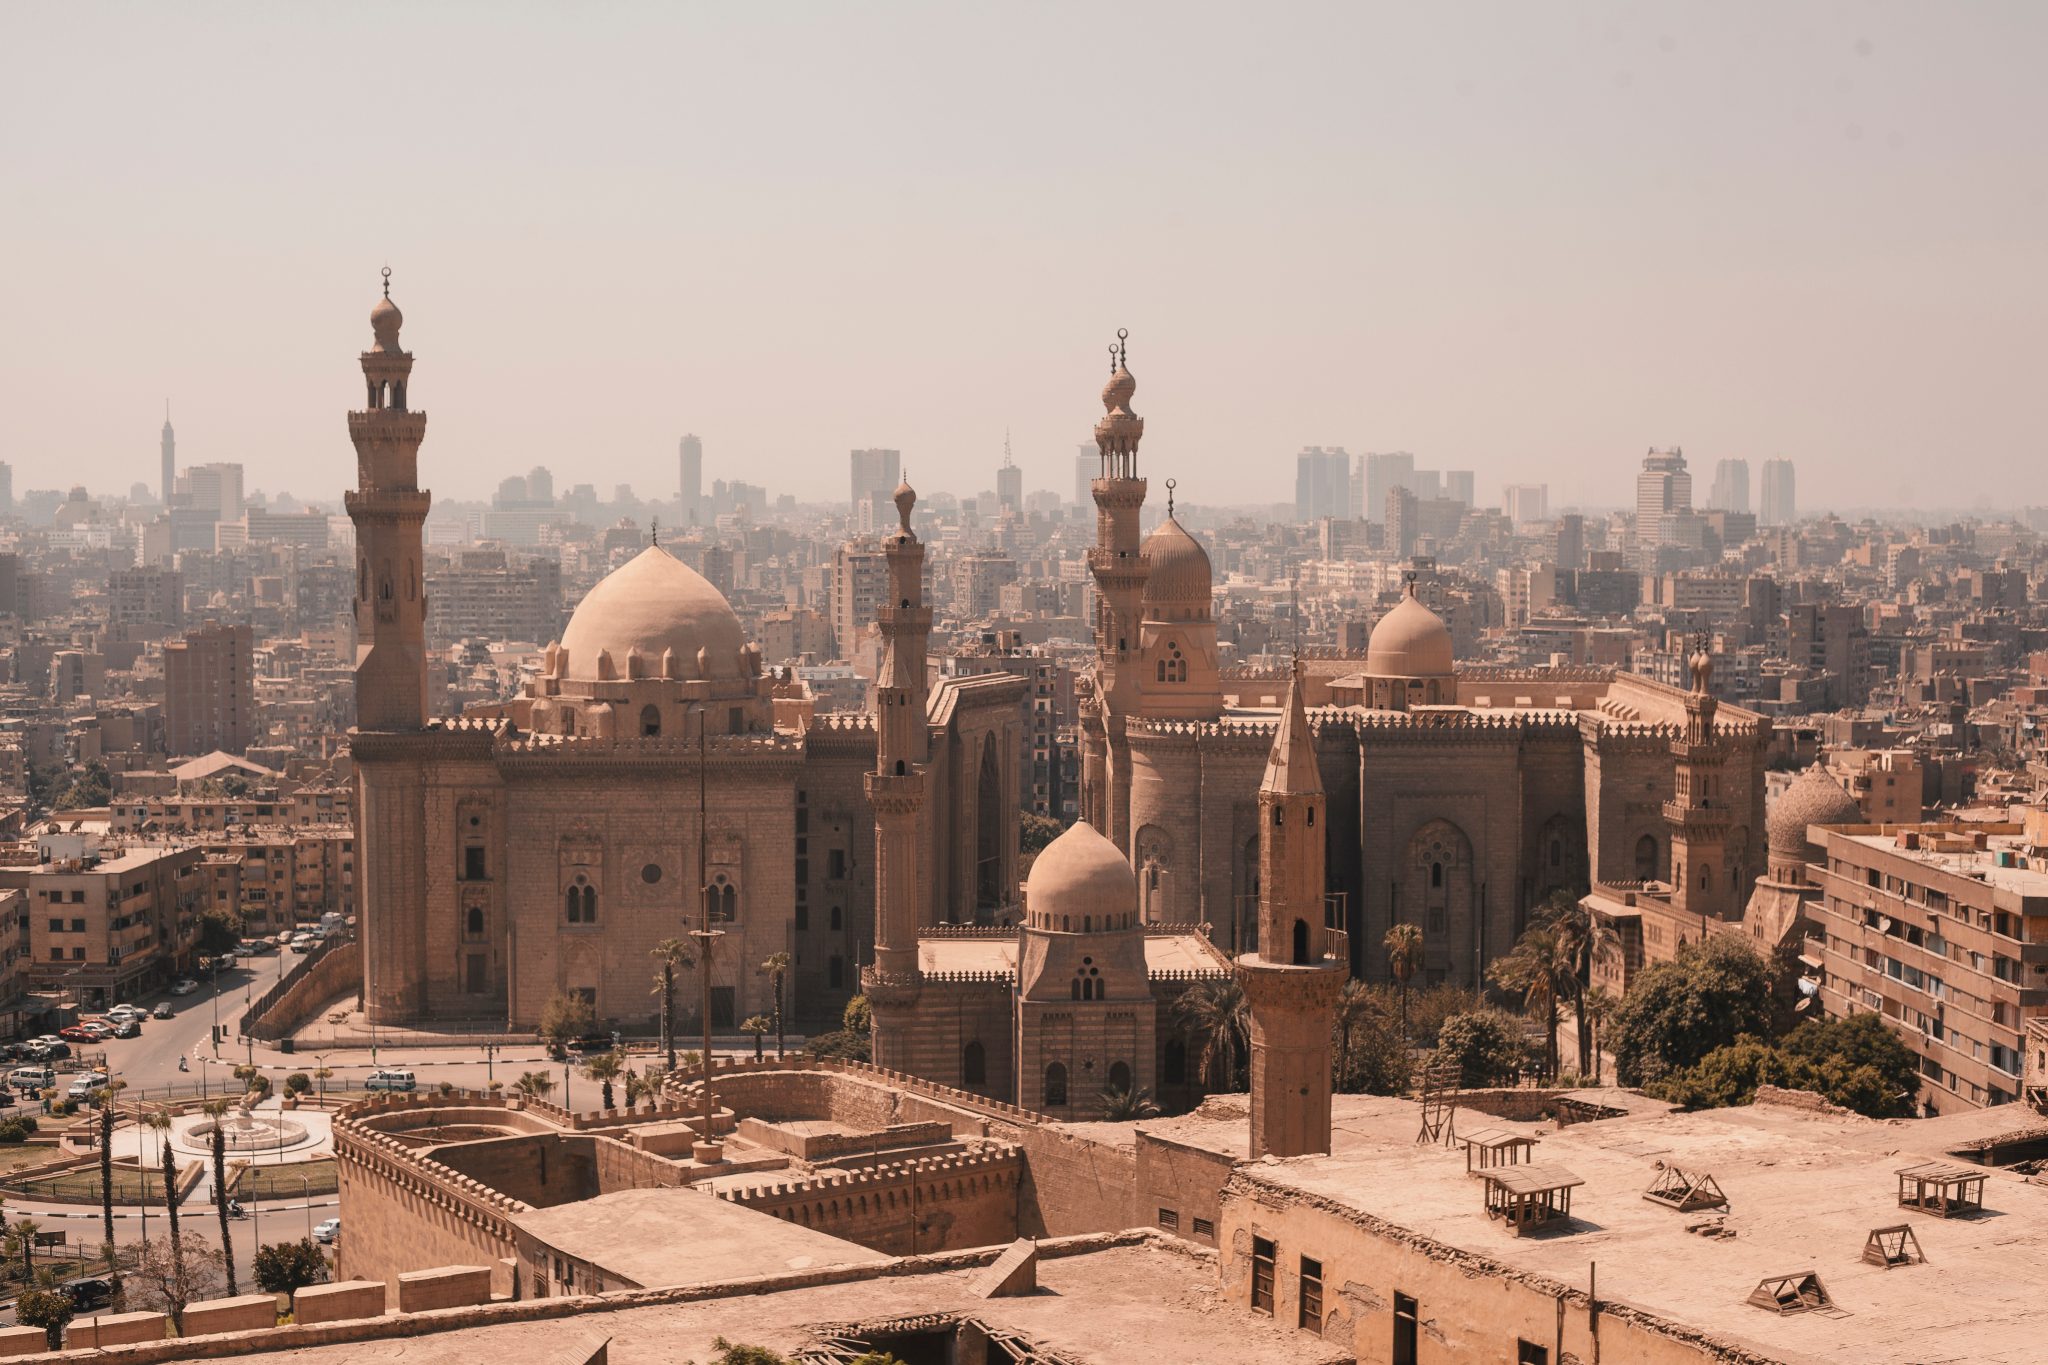 Cairo, Giza & Alexandria